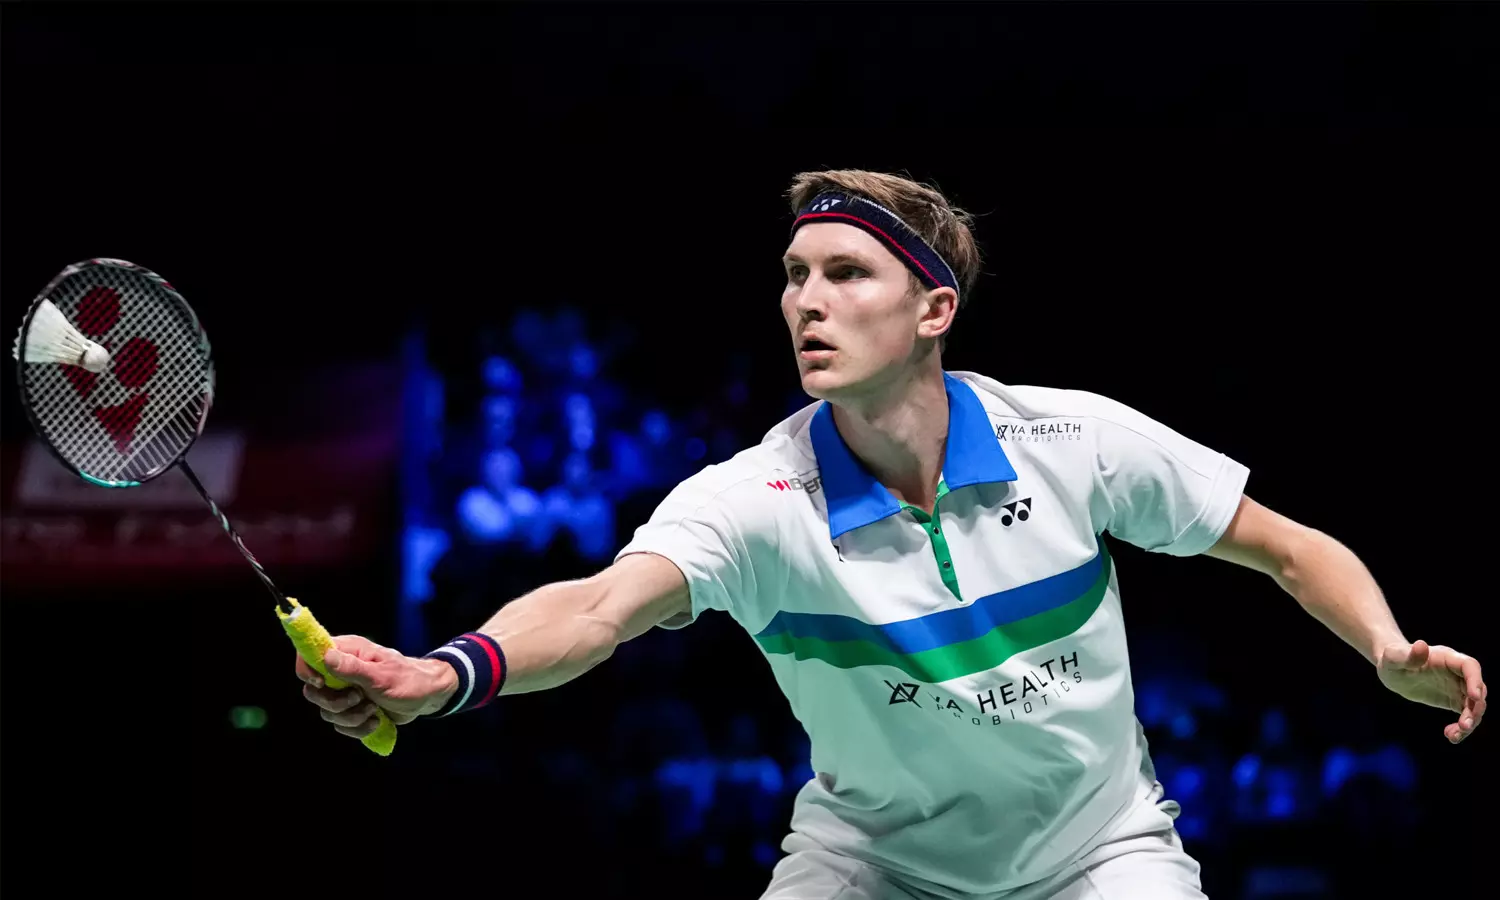 Badminton: Viktor Axelsen claims he has not received prize money for  winning Denmark Open 2021